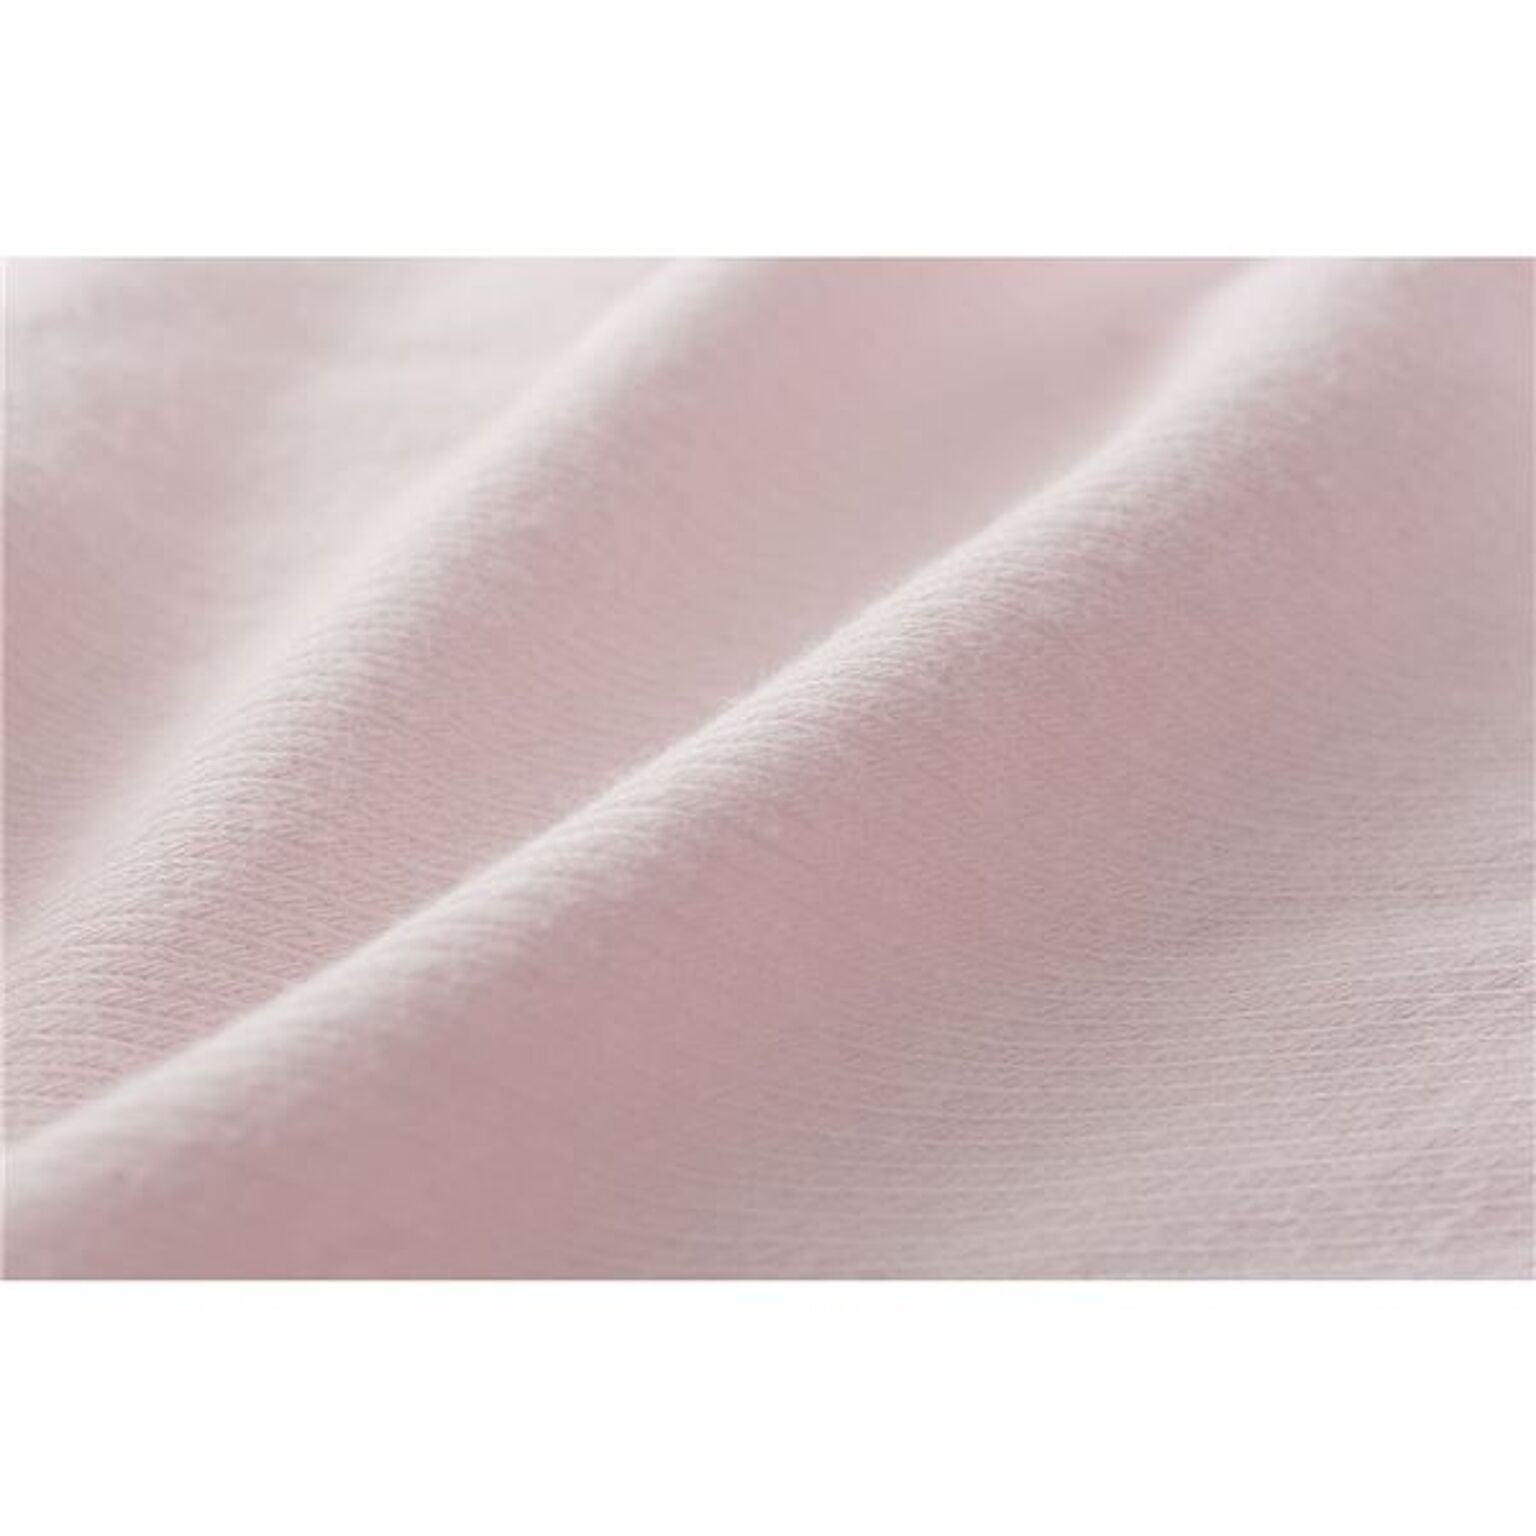 西川 シーツ/寝具 ダブル〜クイーン ピンク 日本製 取付簡単 洗える 綿混 クイックラップシーツ のびのびシーツ送料無料